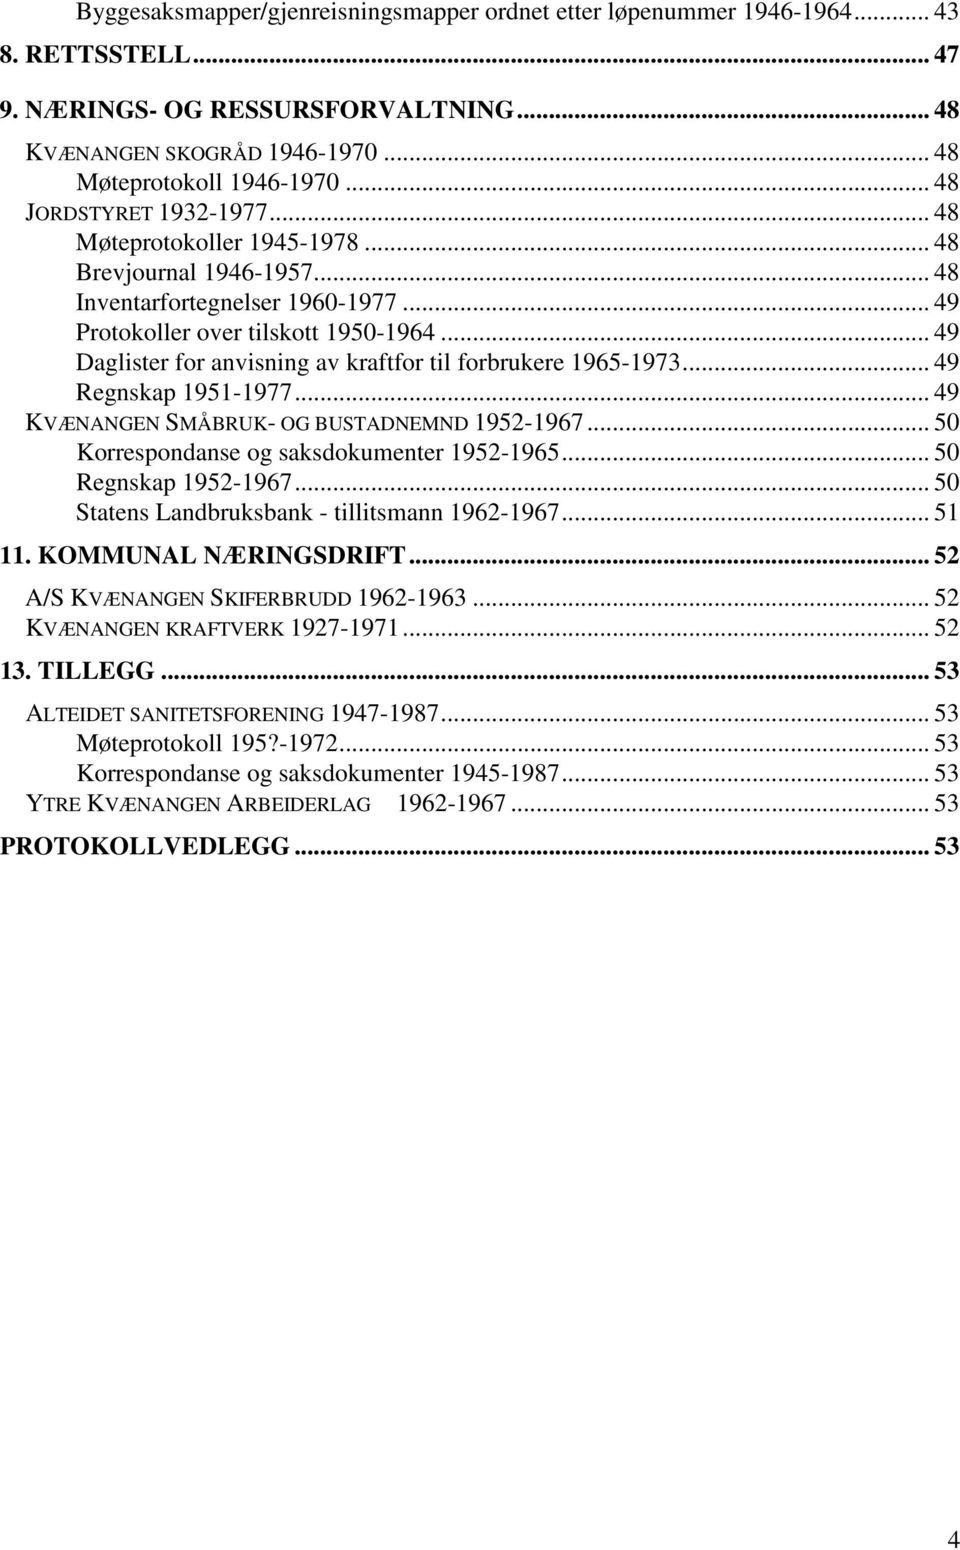 .. 49 Daglister for anvisning av kraftfor til forbrukere 1965-1973... 49 Regnskap 1951-1977... 49 KVÆNANGEN SMÅBRUK- OG BUSTADNEMND 1952-1967... 50 Korrespondanse og saksdokumenter 1952-1965.